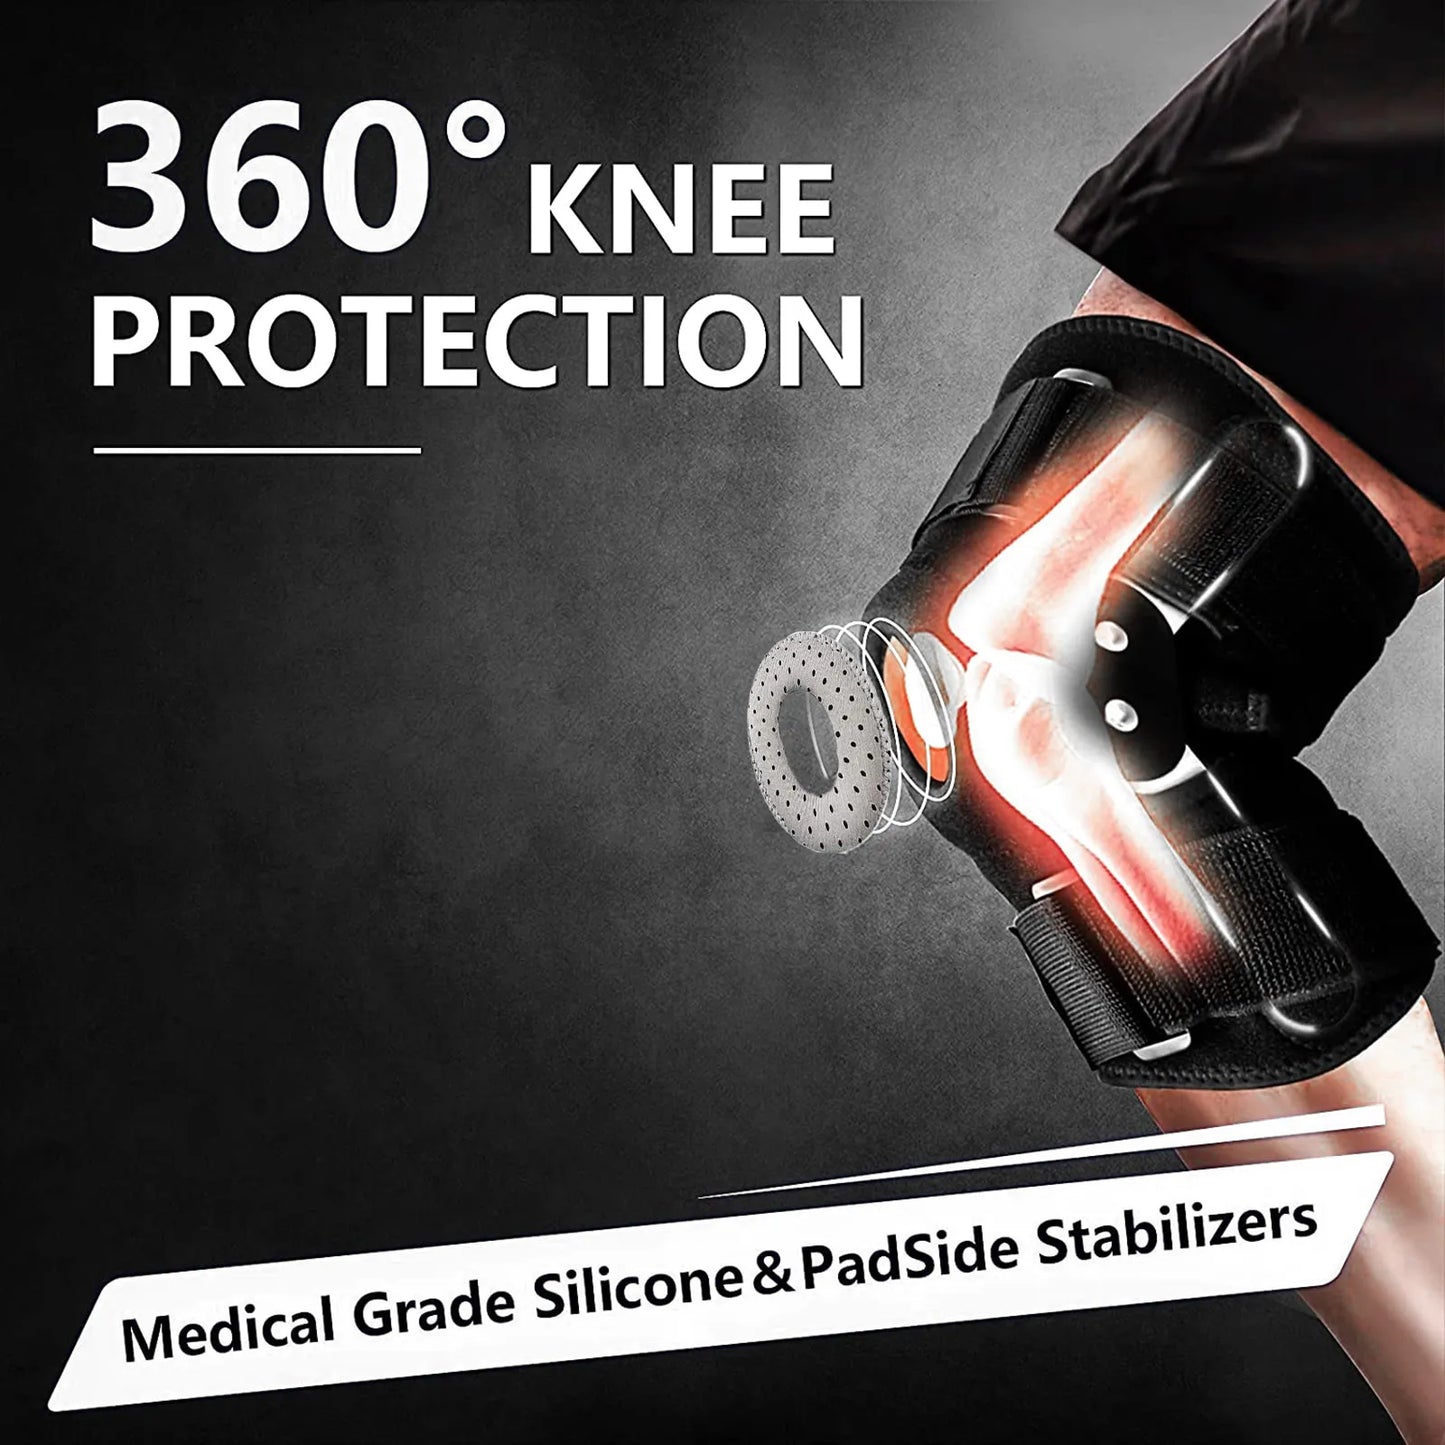 FlexiGuard Verstelbare en Scharnierende Kniebrace voor Optimale Ondersteuning en Pijnverlichting